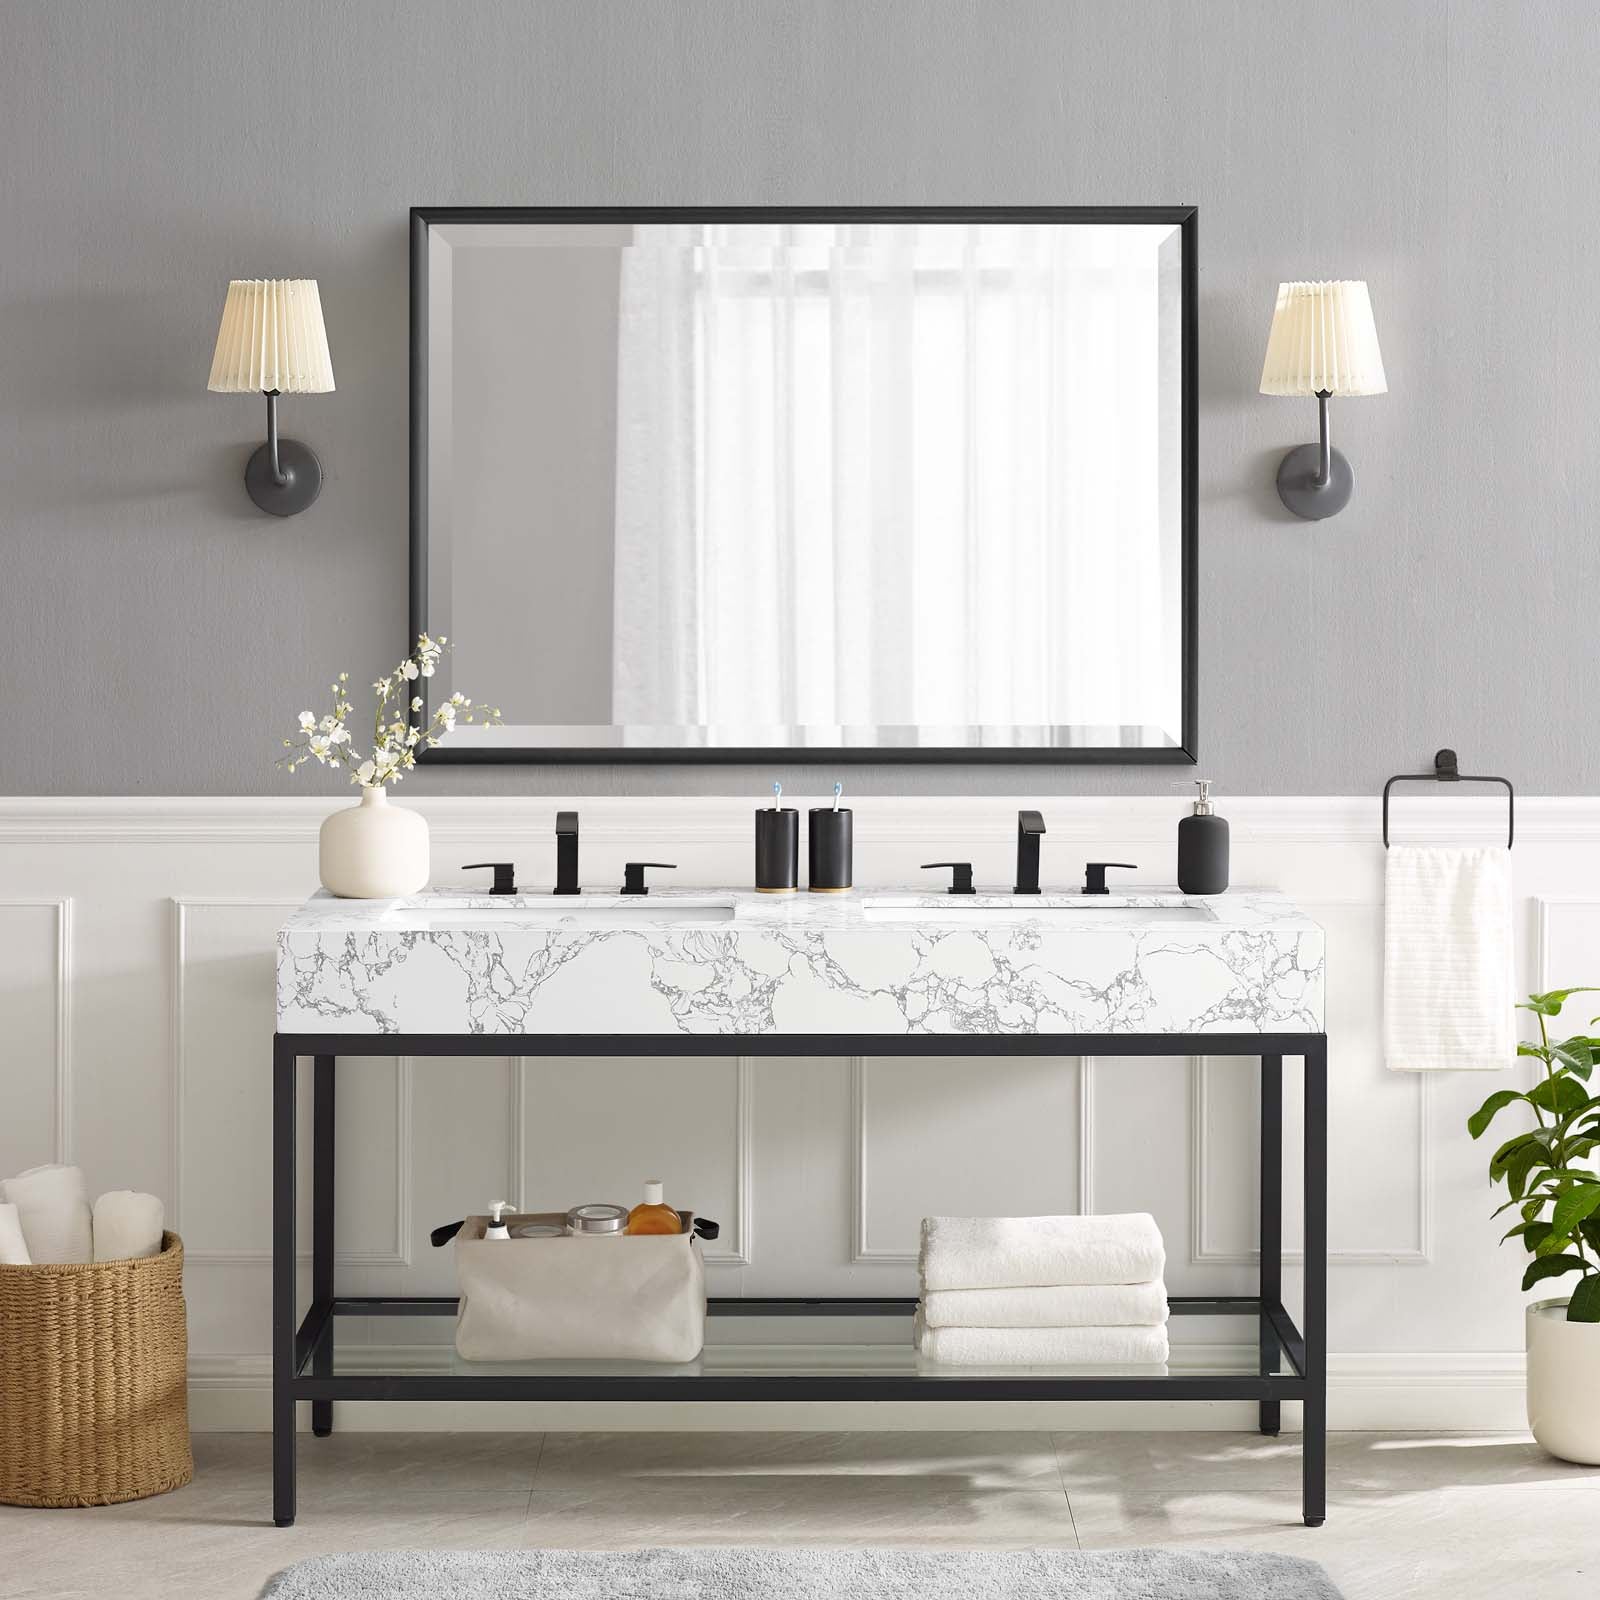 Kingsley 60" Black Stainless Steel Bathroom Vanity-Bathroom Vanity-Modway-Wall2Wall Furnishings